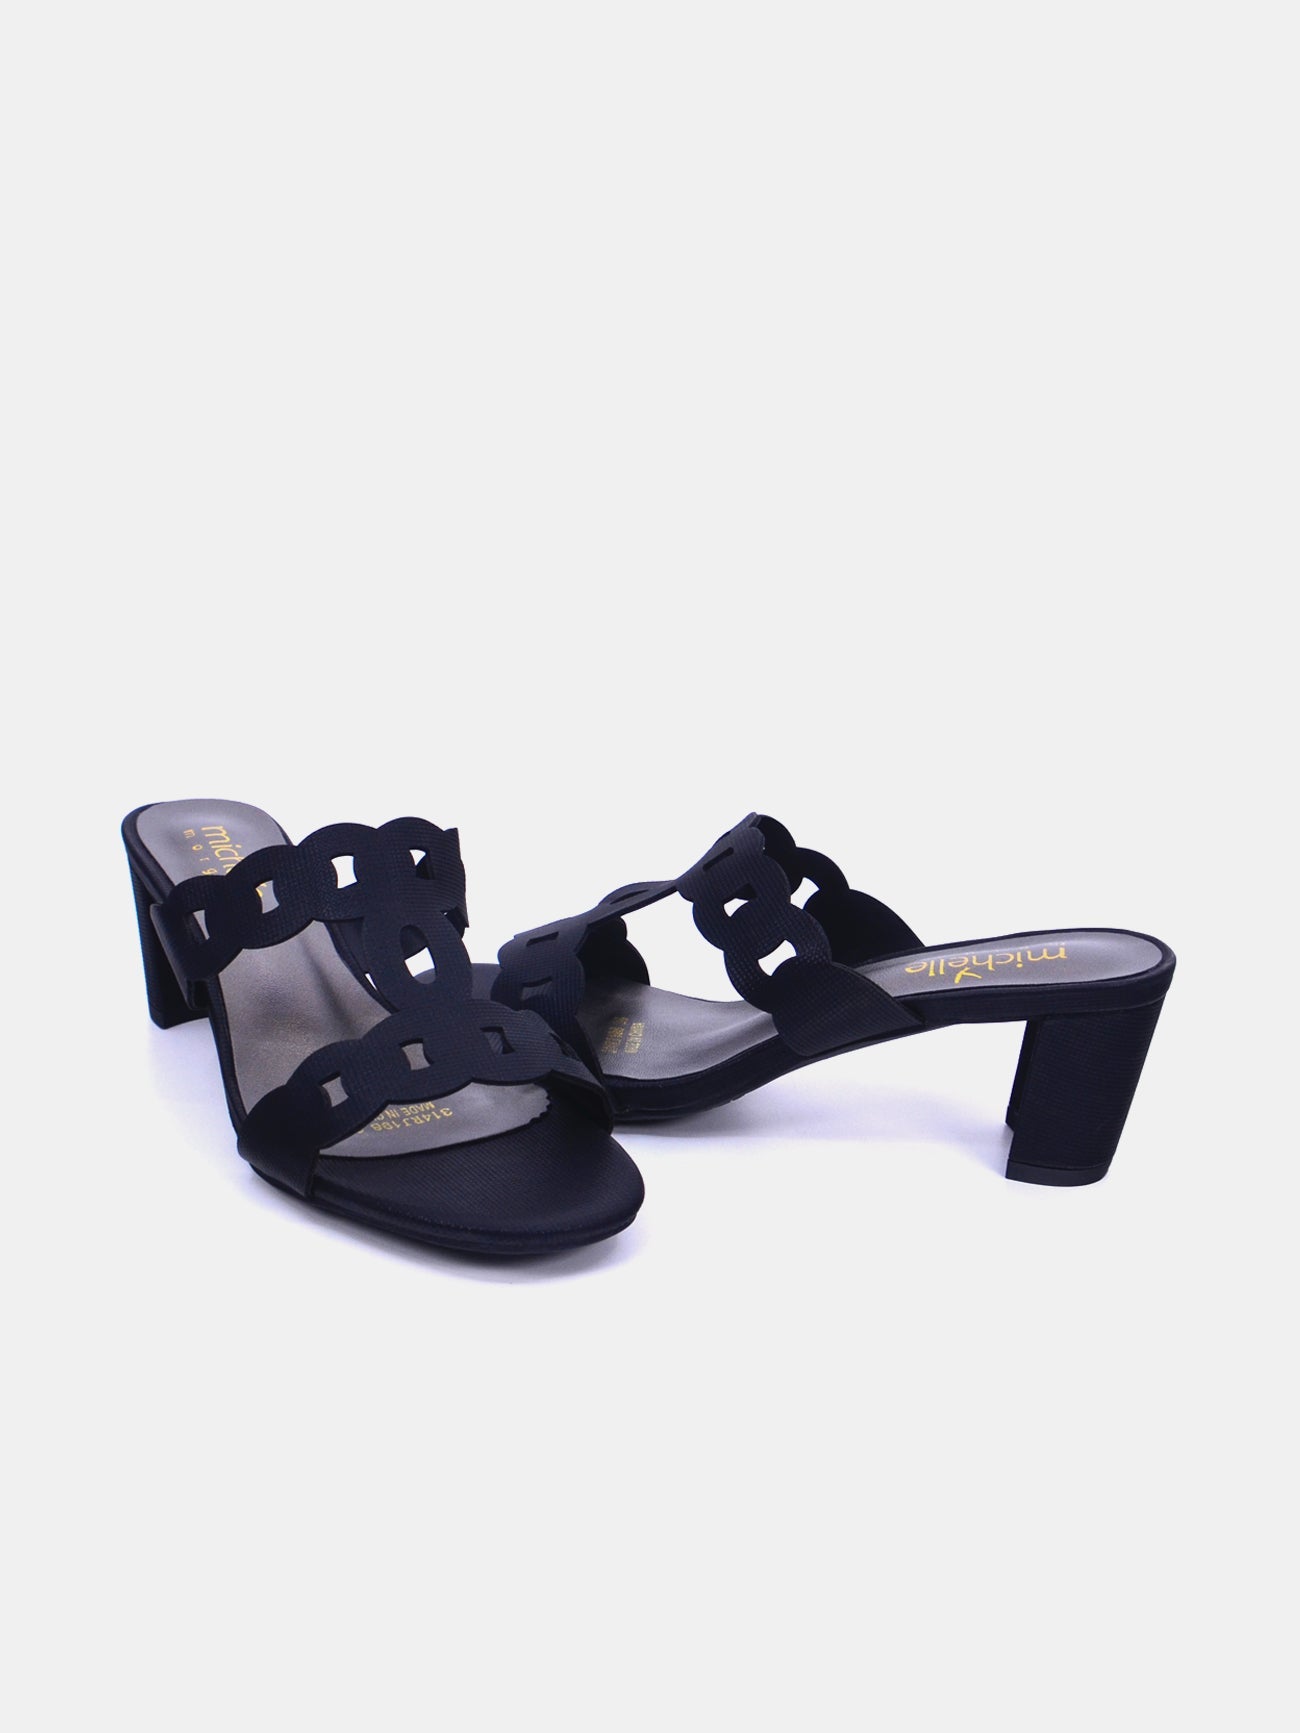 Michelle Morgan 314RJ198 Women's Heeled Sandals #color_Black